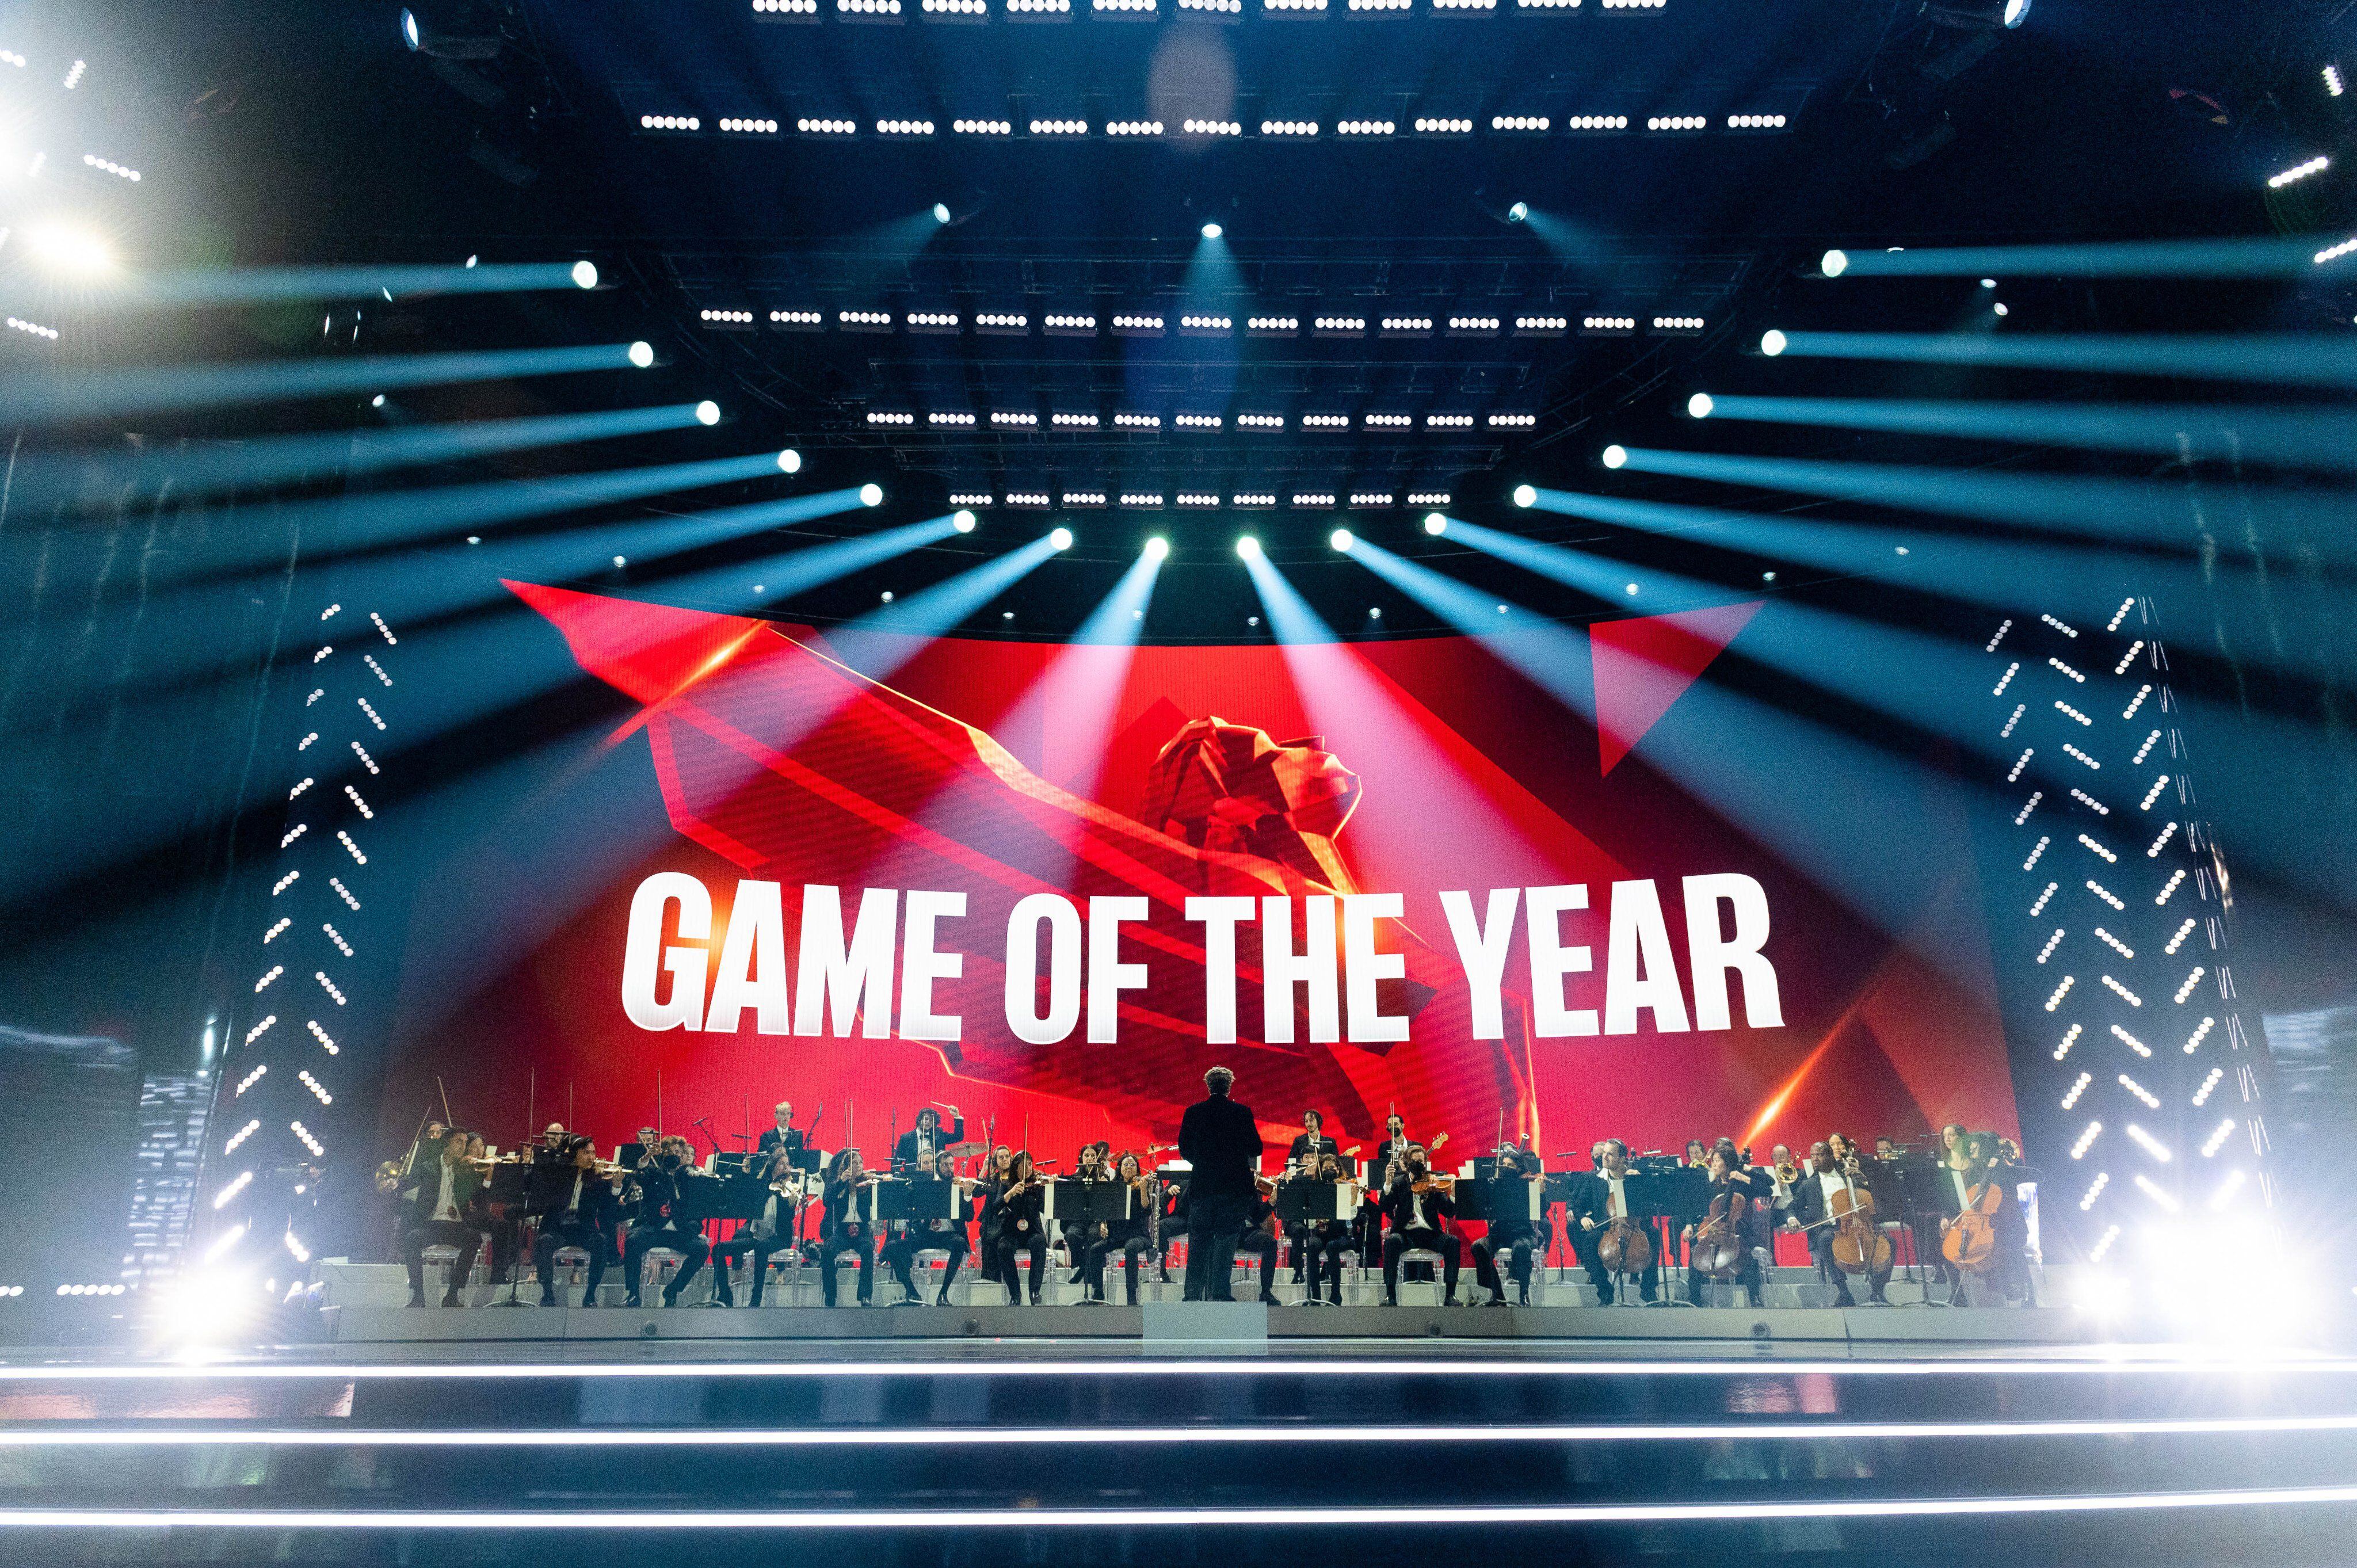 The Game Awards 2022: síguelos en vivo en FayerWayer Live